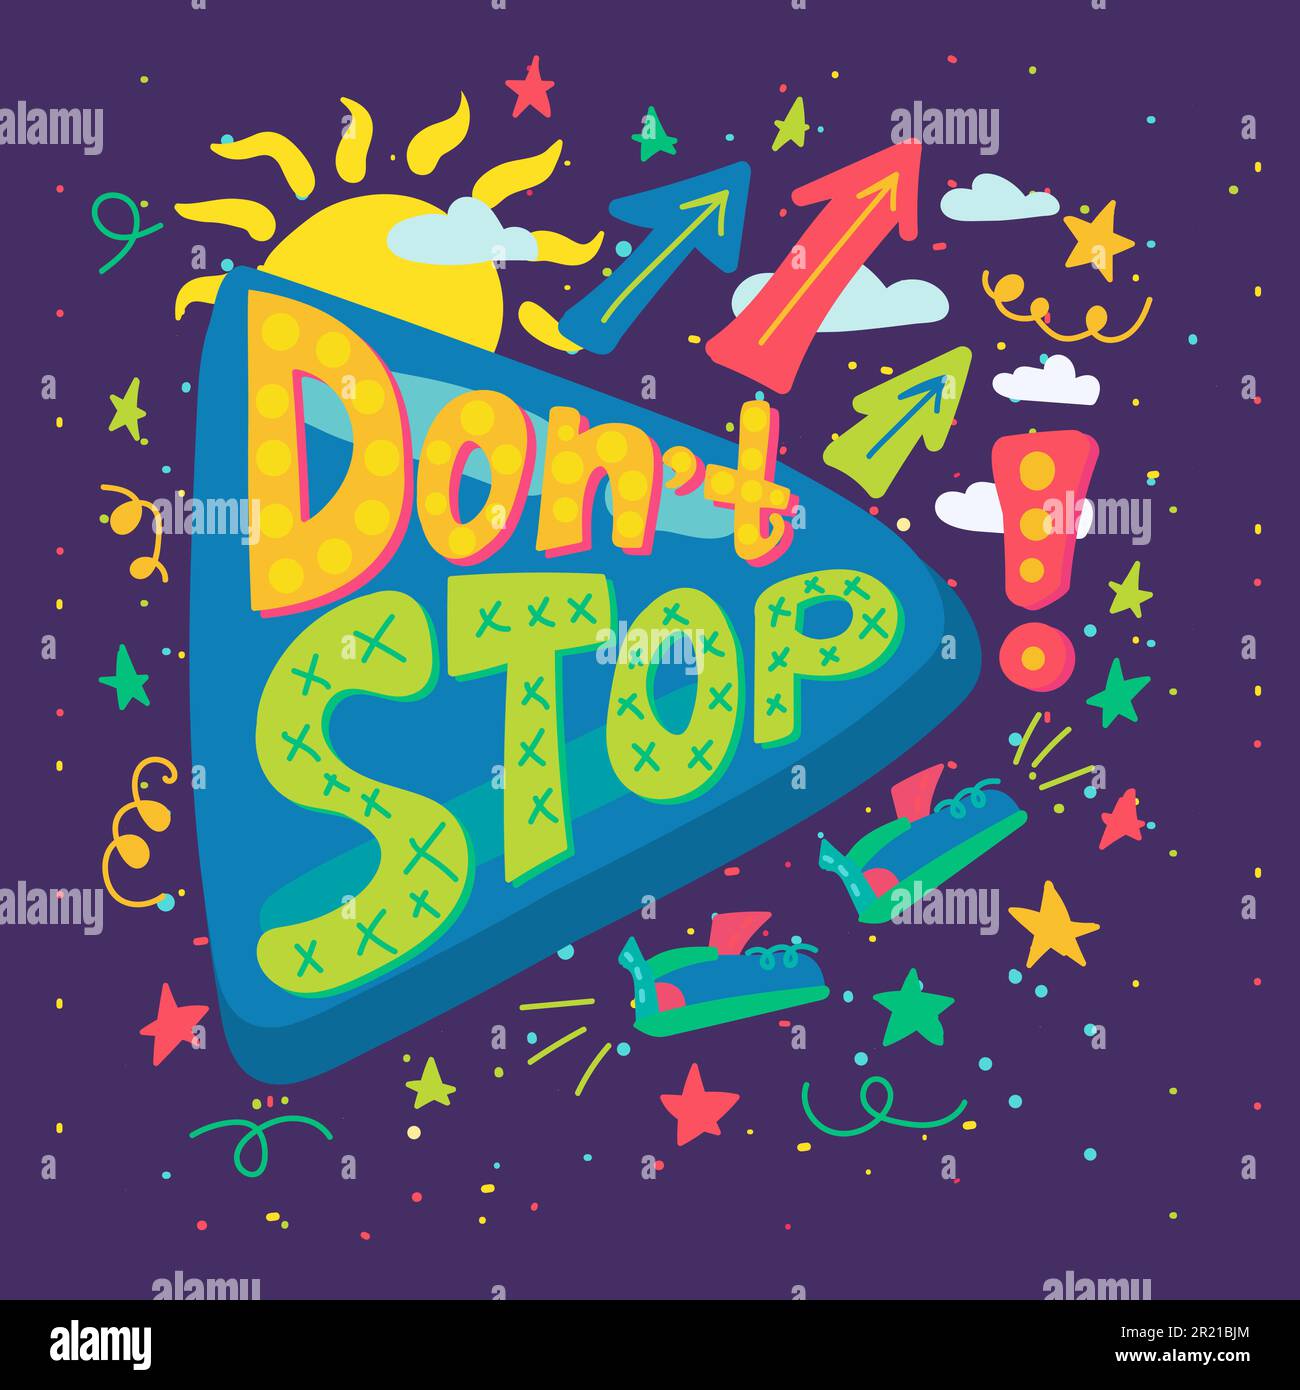 Don't stop Creativity“-Slogan-Vektor. Der Motivationsbrief schmückt Sonne  und Ausrufezeichen, wolkigen Nachthimmel mit Sternen und Fliegenschuhen.  Colo Stock-Vektorgrafik - Alamy